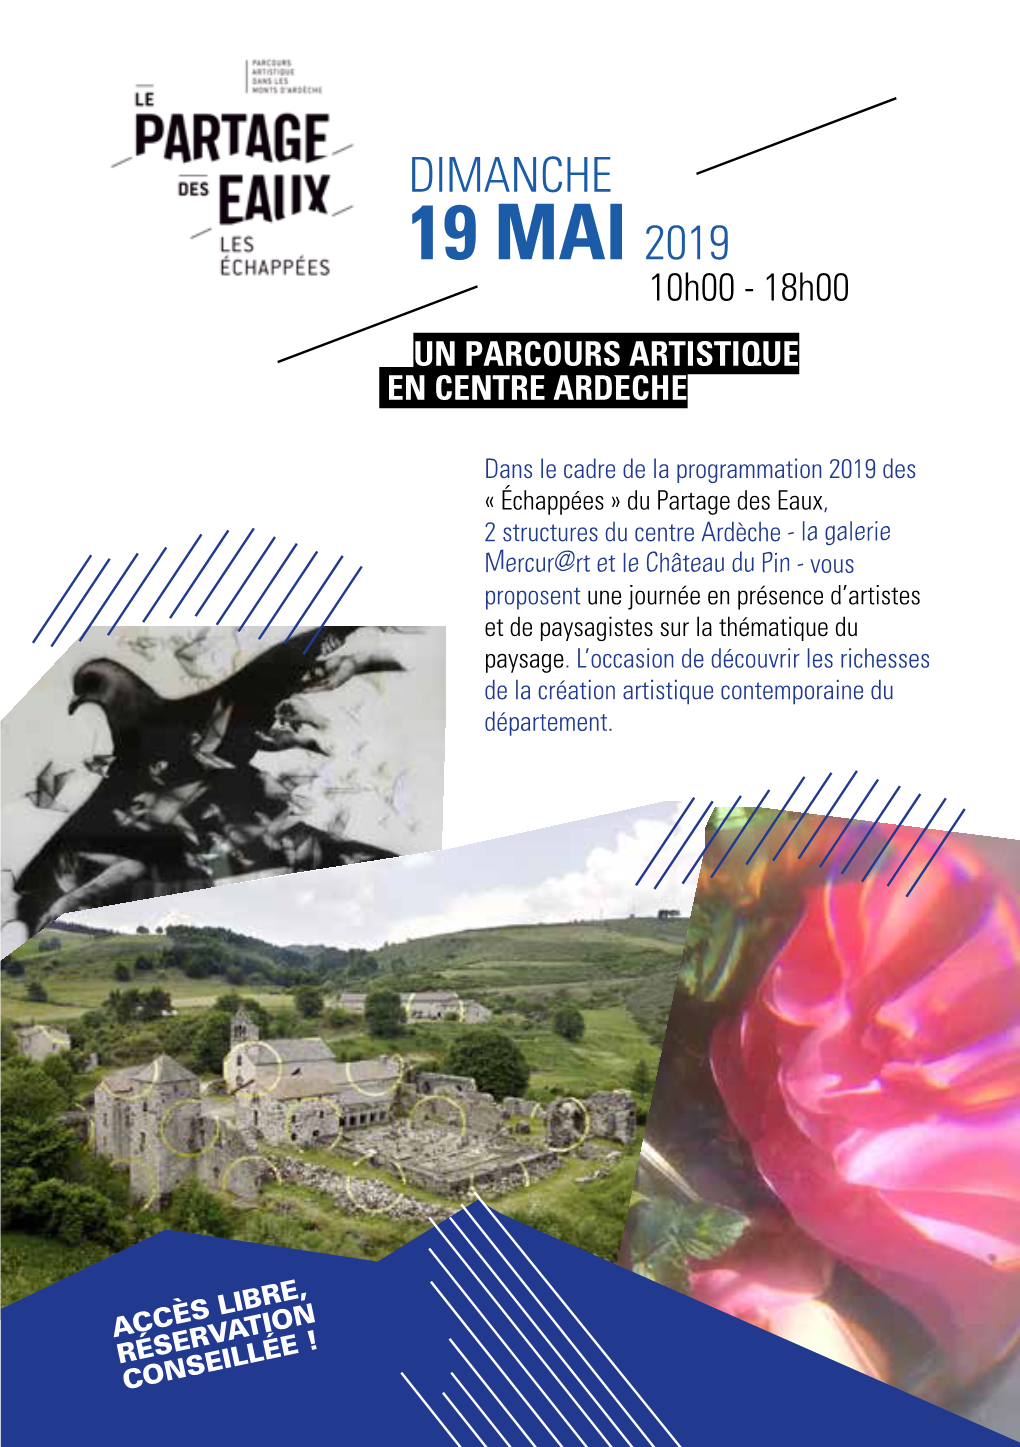 19 MAI 2019 10H00 - 18H00 UN PARCOURS ARTISTIQUE EN CENTRE ARDÈCHE